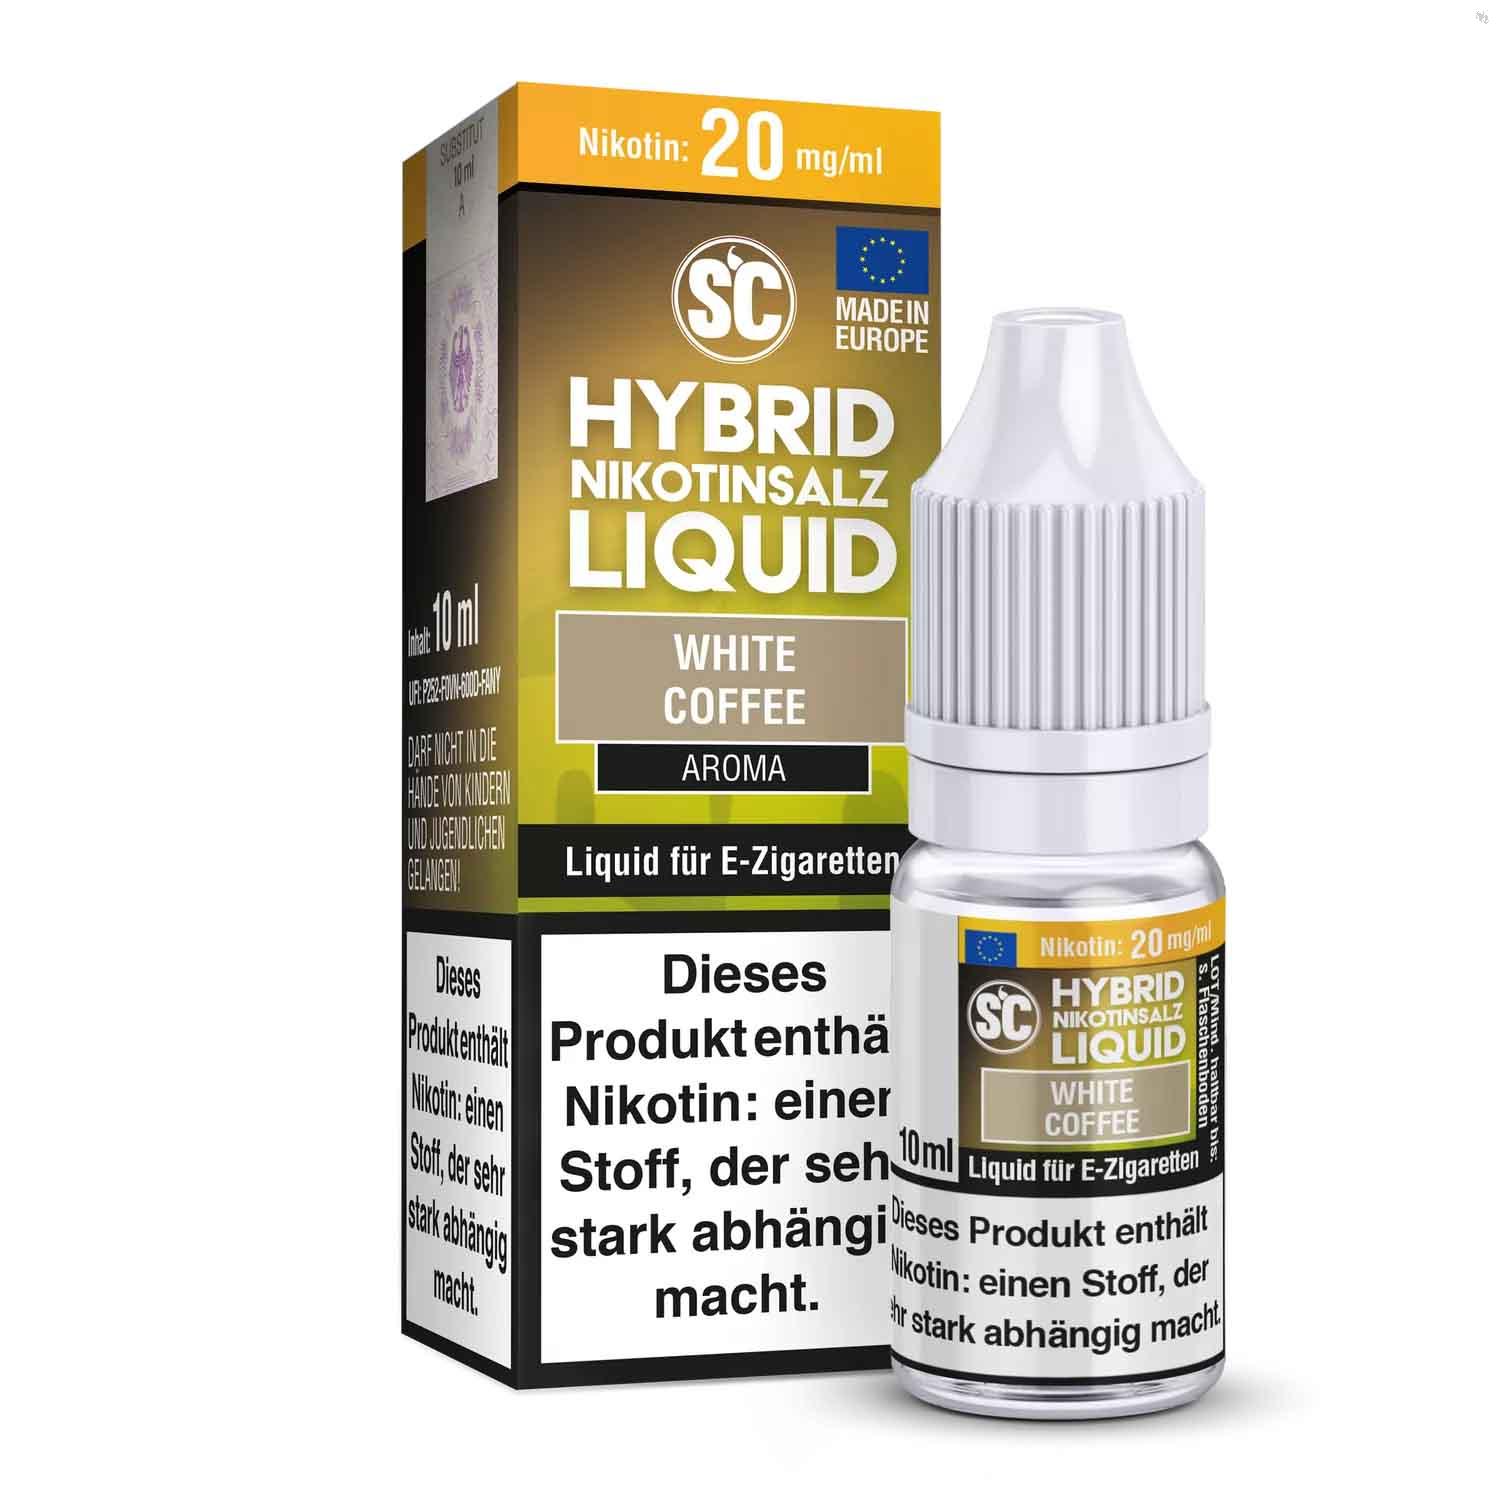 SC - White Coffee Hybrid Nikotinsalz Liquid ✅ Günstig kaufen! 